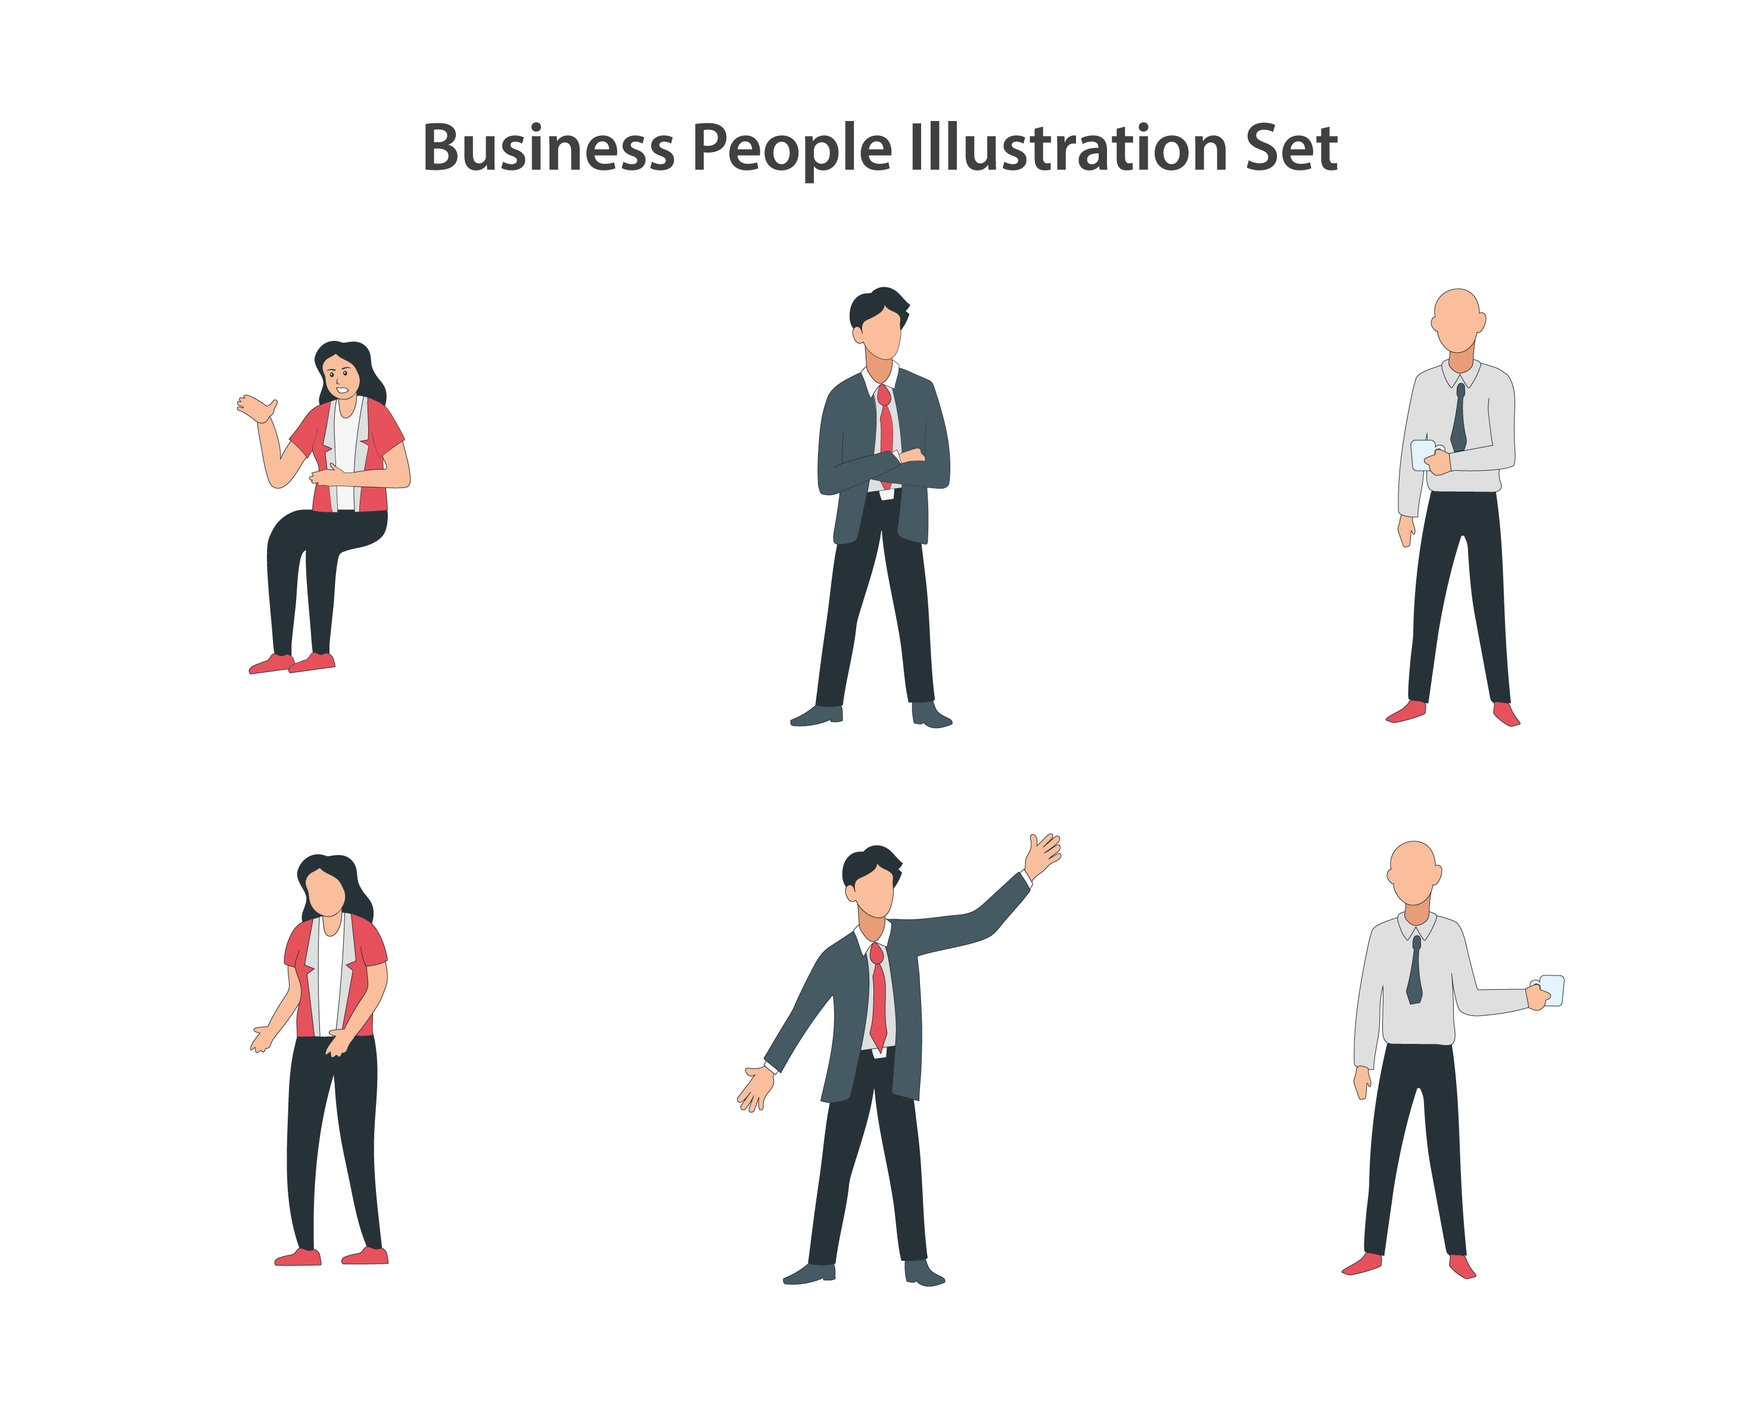 Business People Story Set in Illustrator, EPS, SVG, JPG, PNG